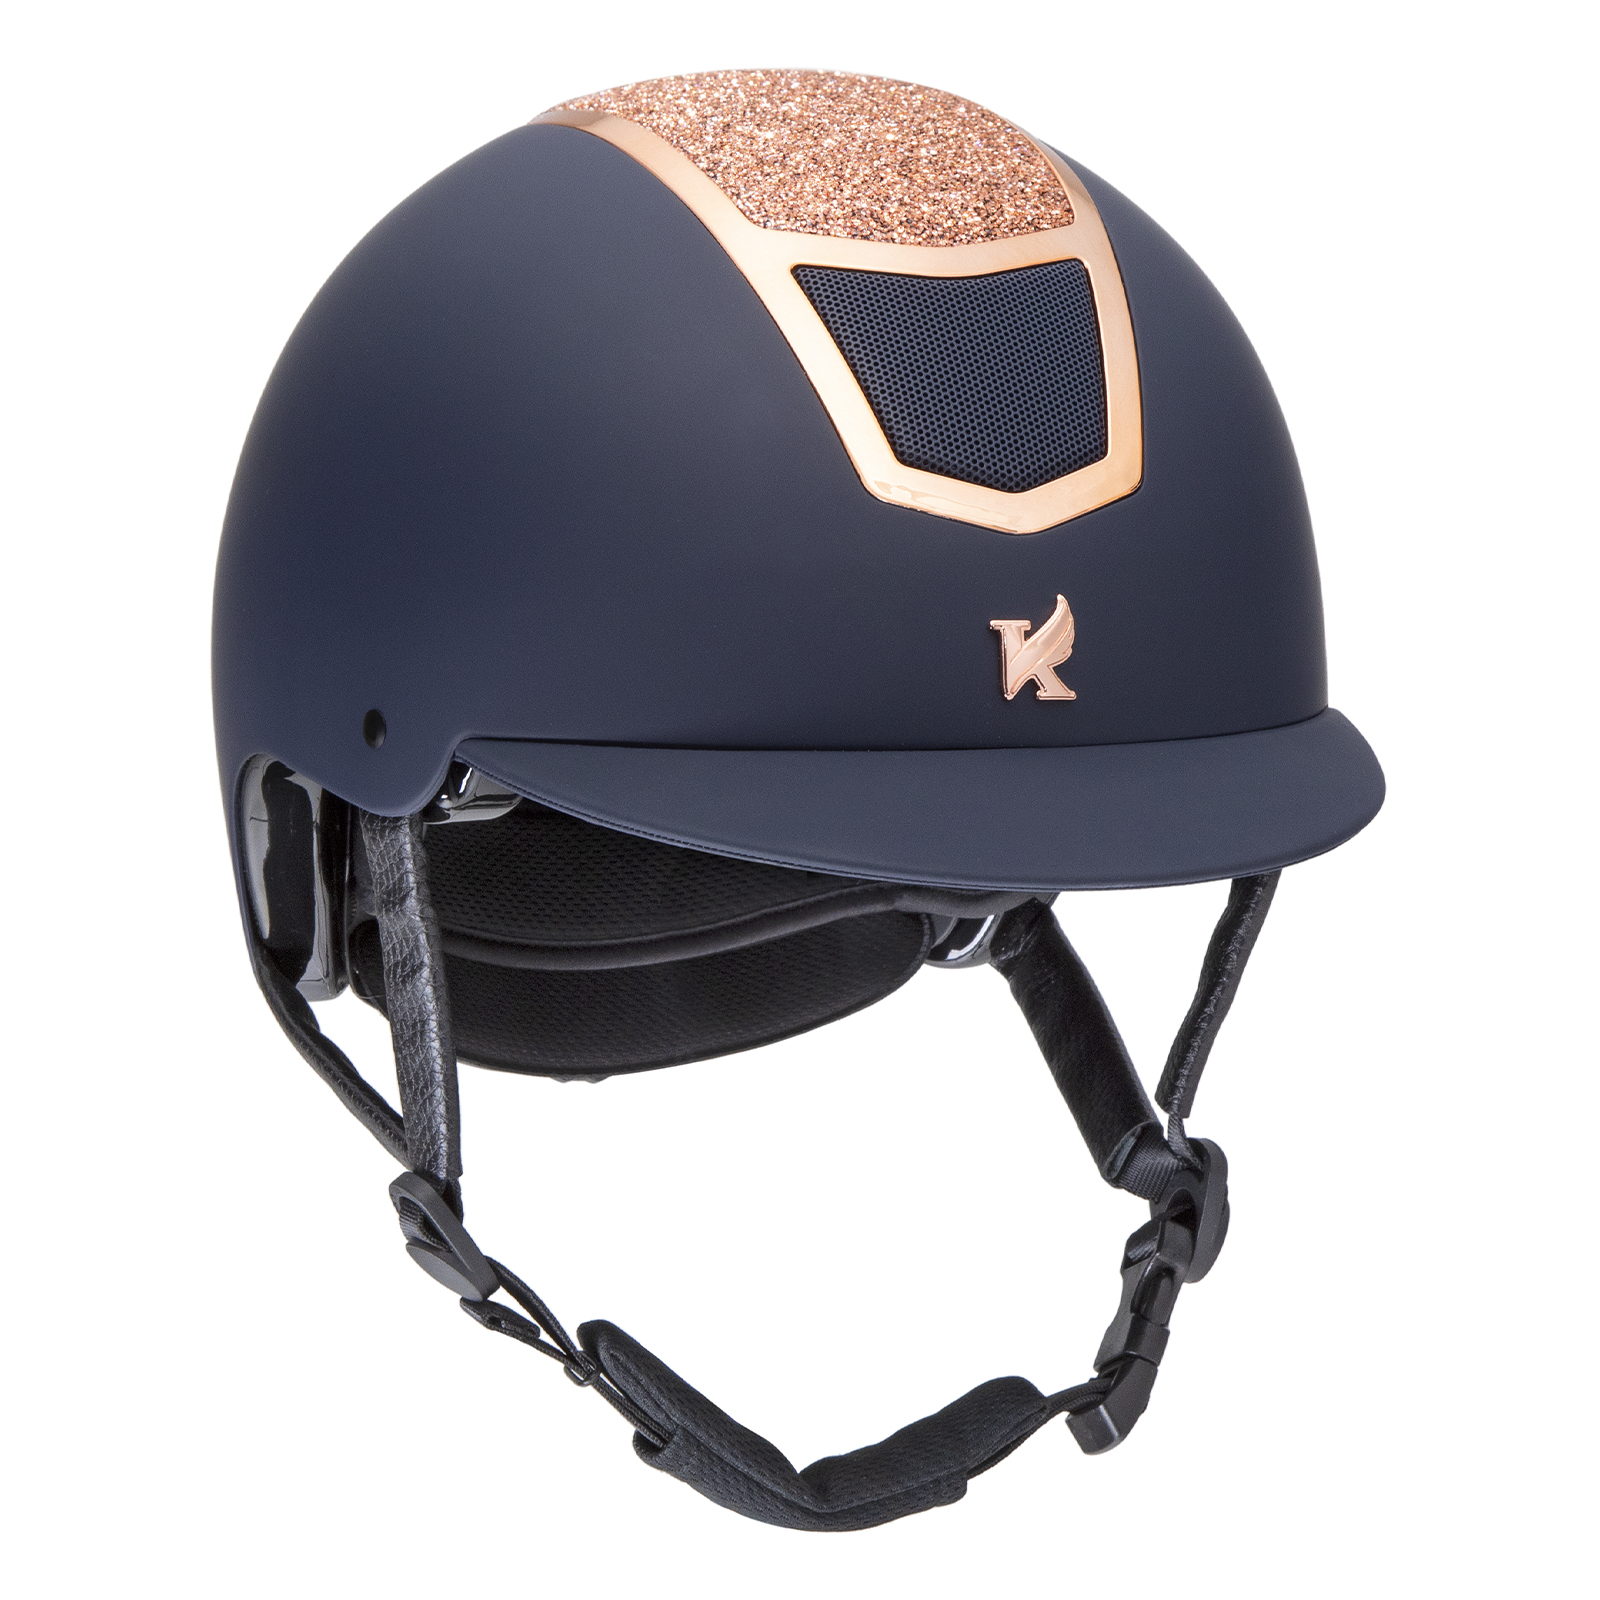 Шлем для верховой езды с регулировкой SHIRES Valentina, обхват головы 56-58 см